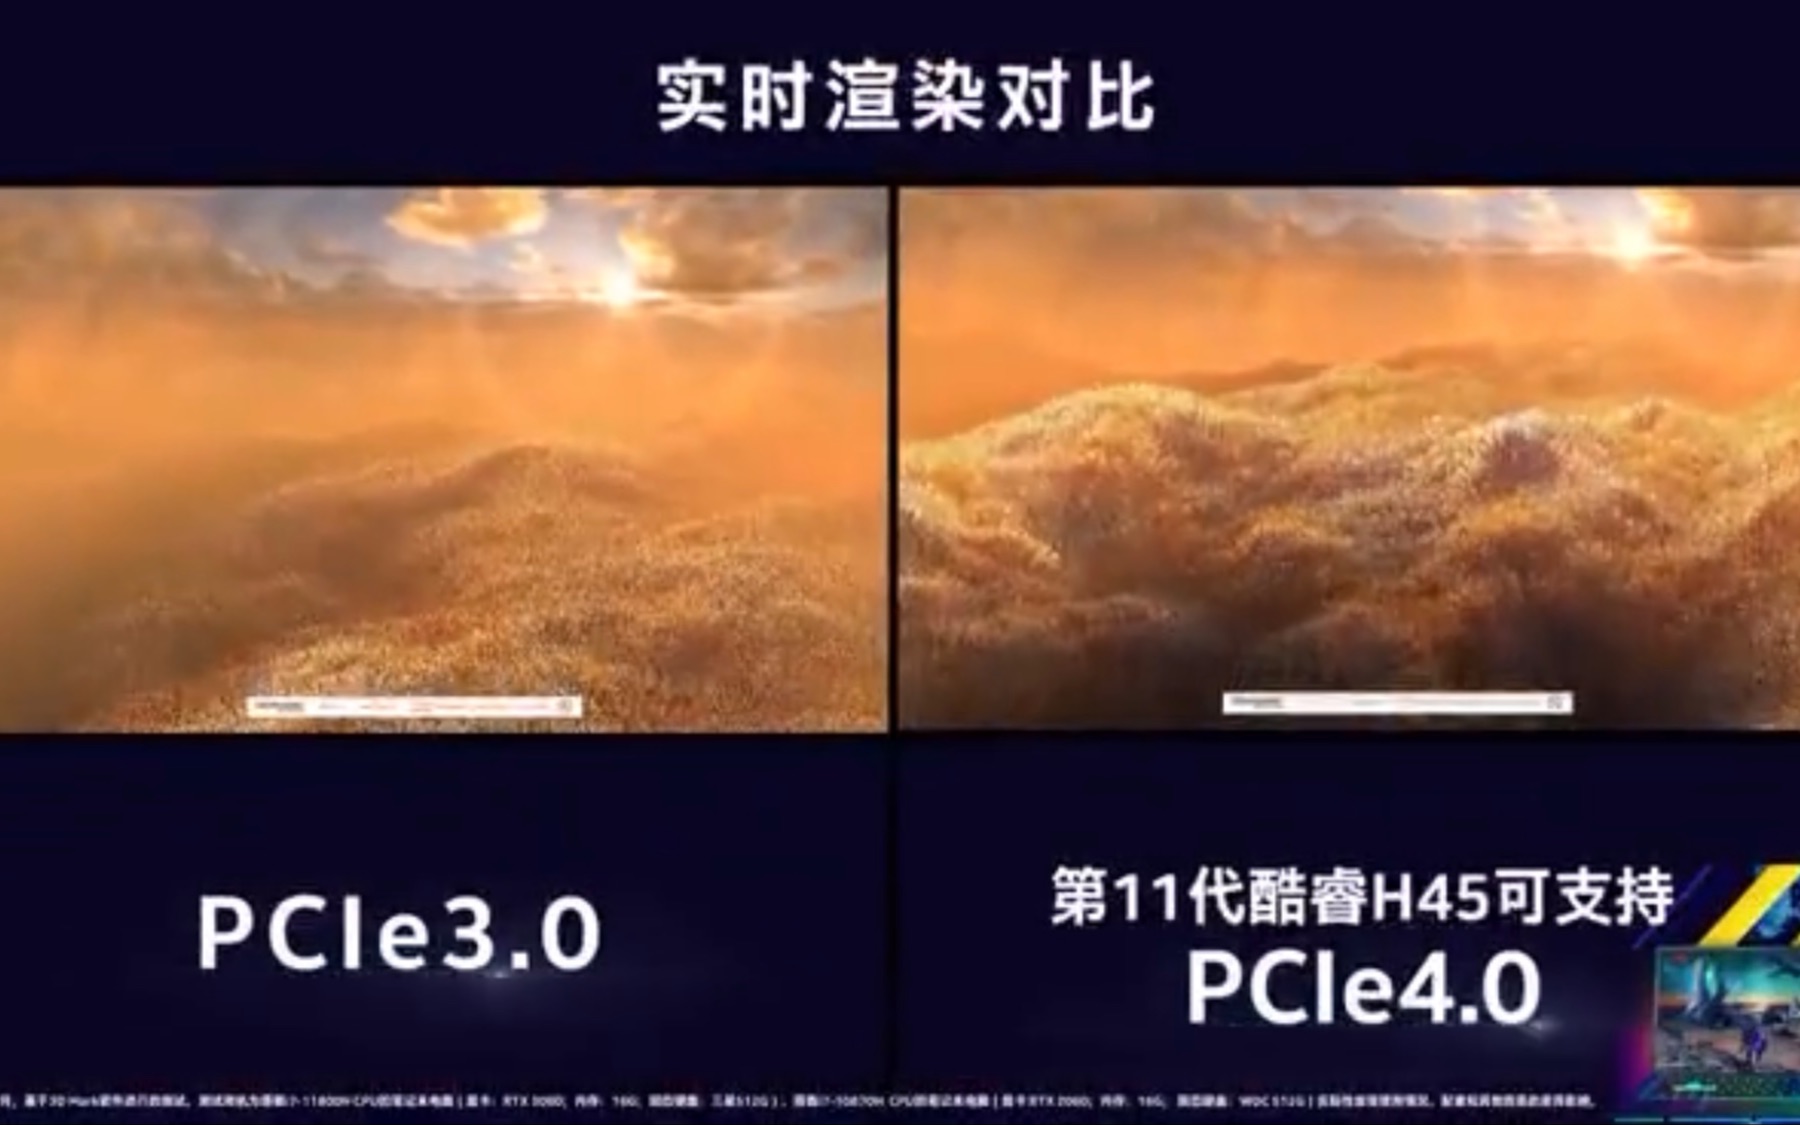 PCIe4.0相较于PCIe3.0优势何在？对比测试告诉你